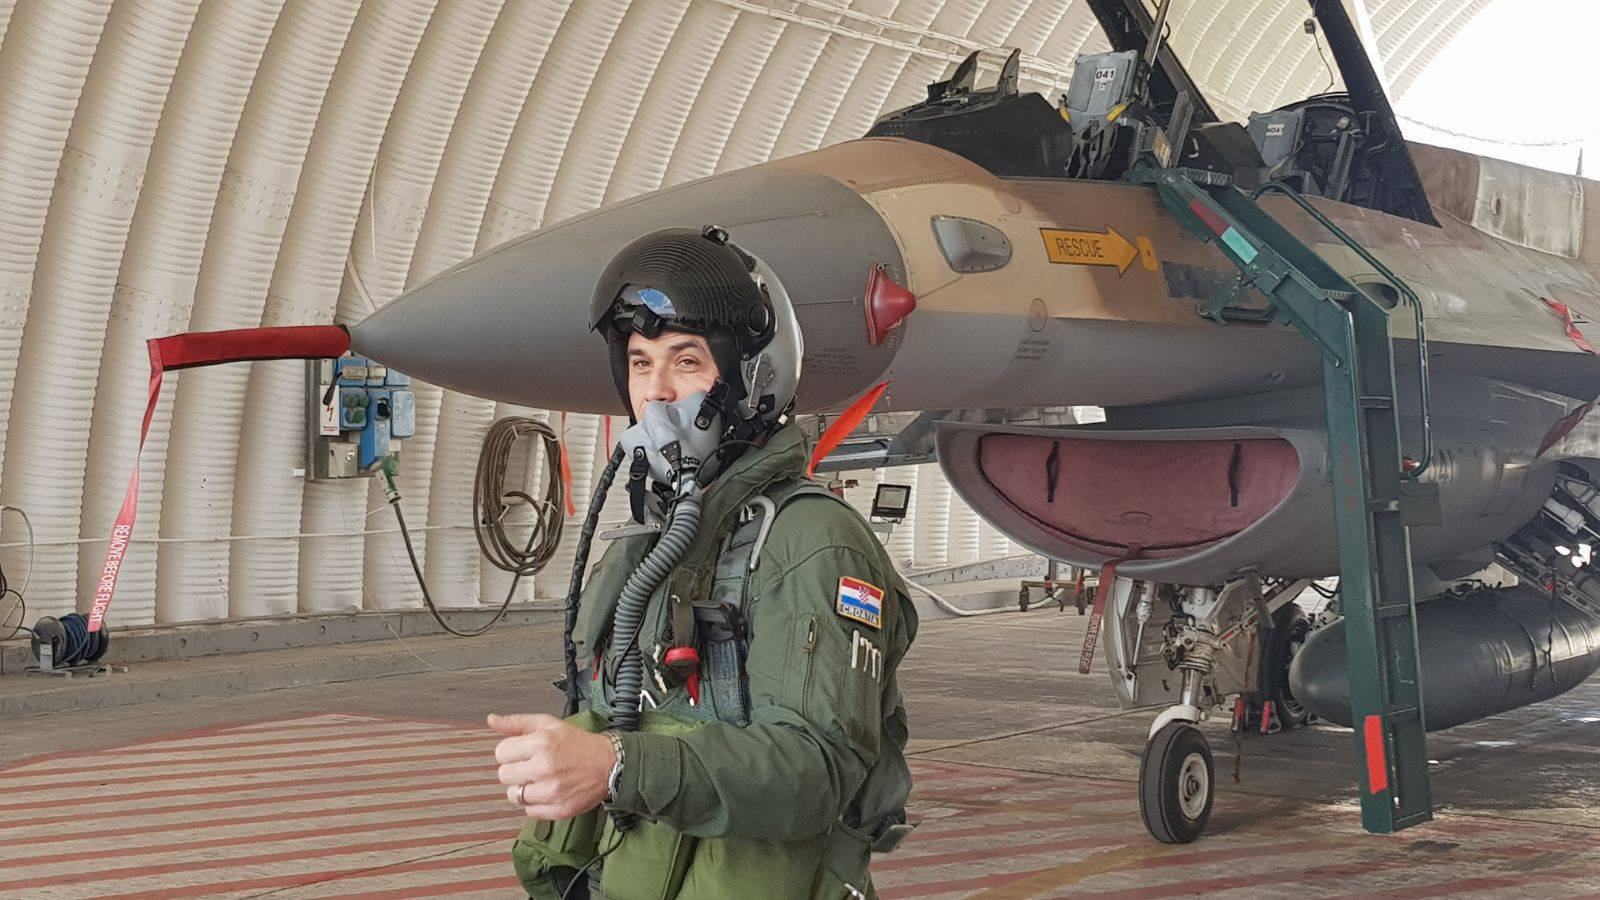 Hrvatski pilot isprobao je F-16 avione koje kupujemo u Izraelu